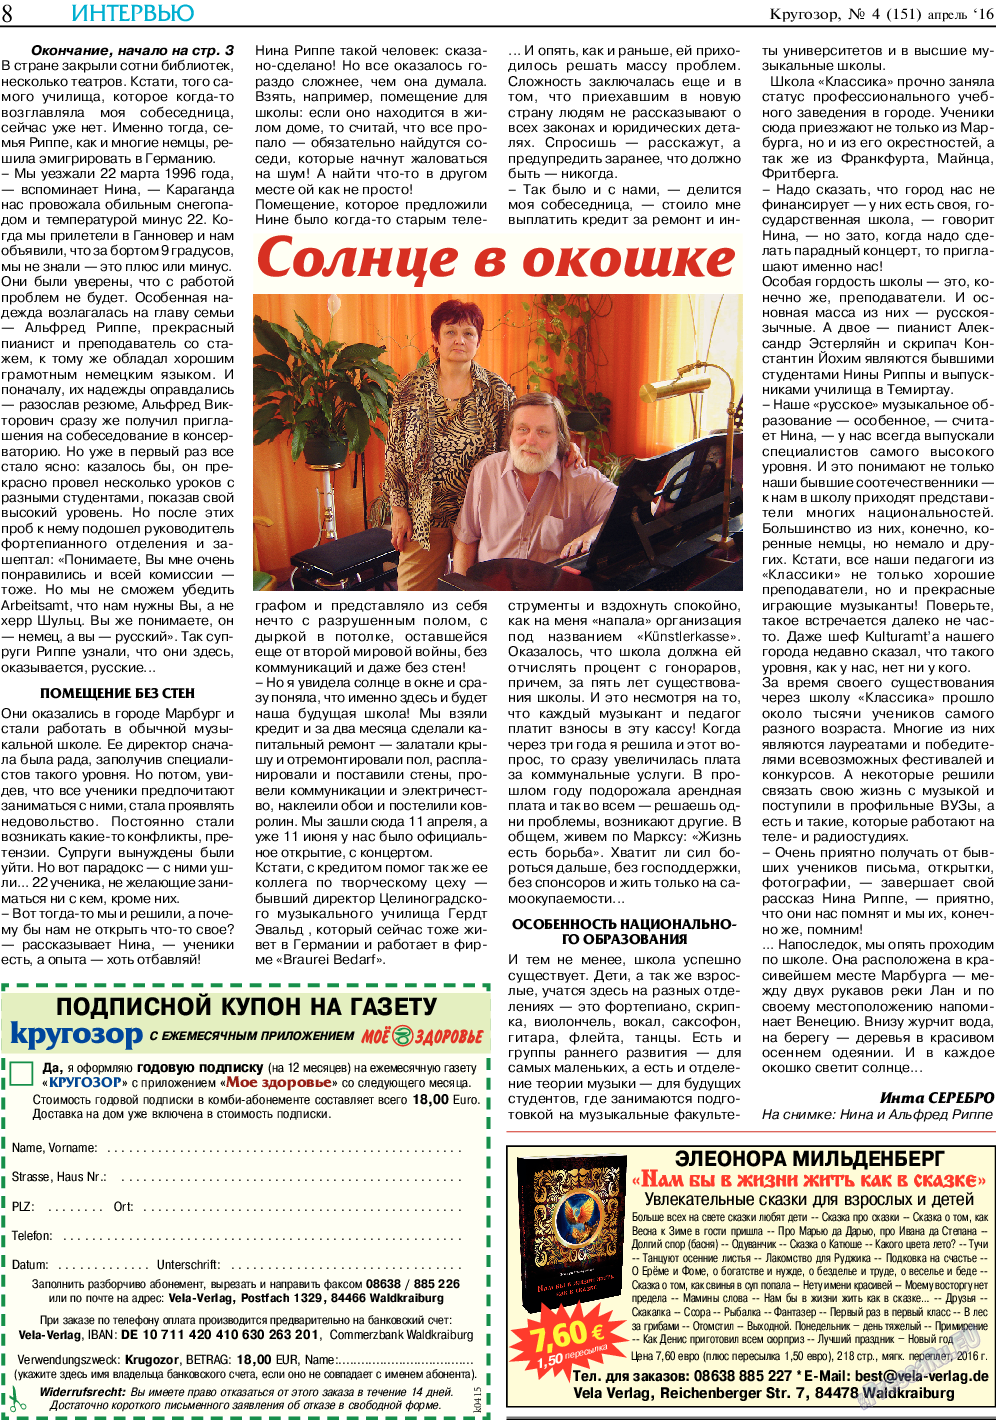 Кругозор, газета. 2016 №4 стр.8